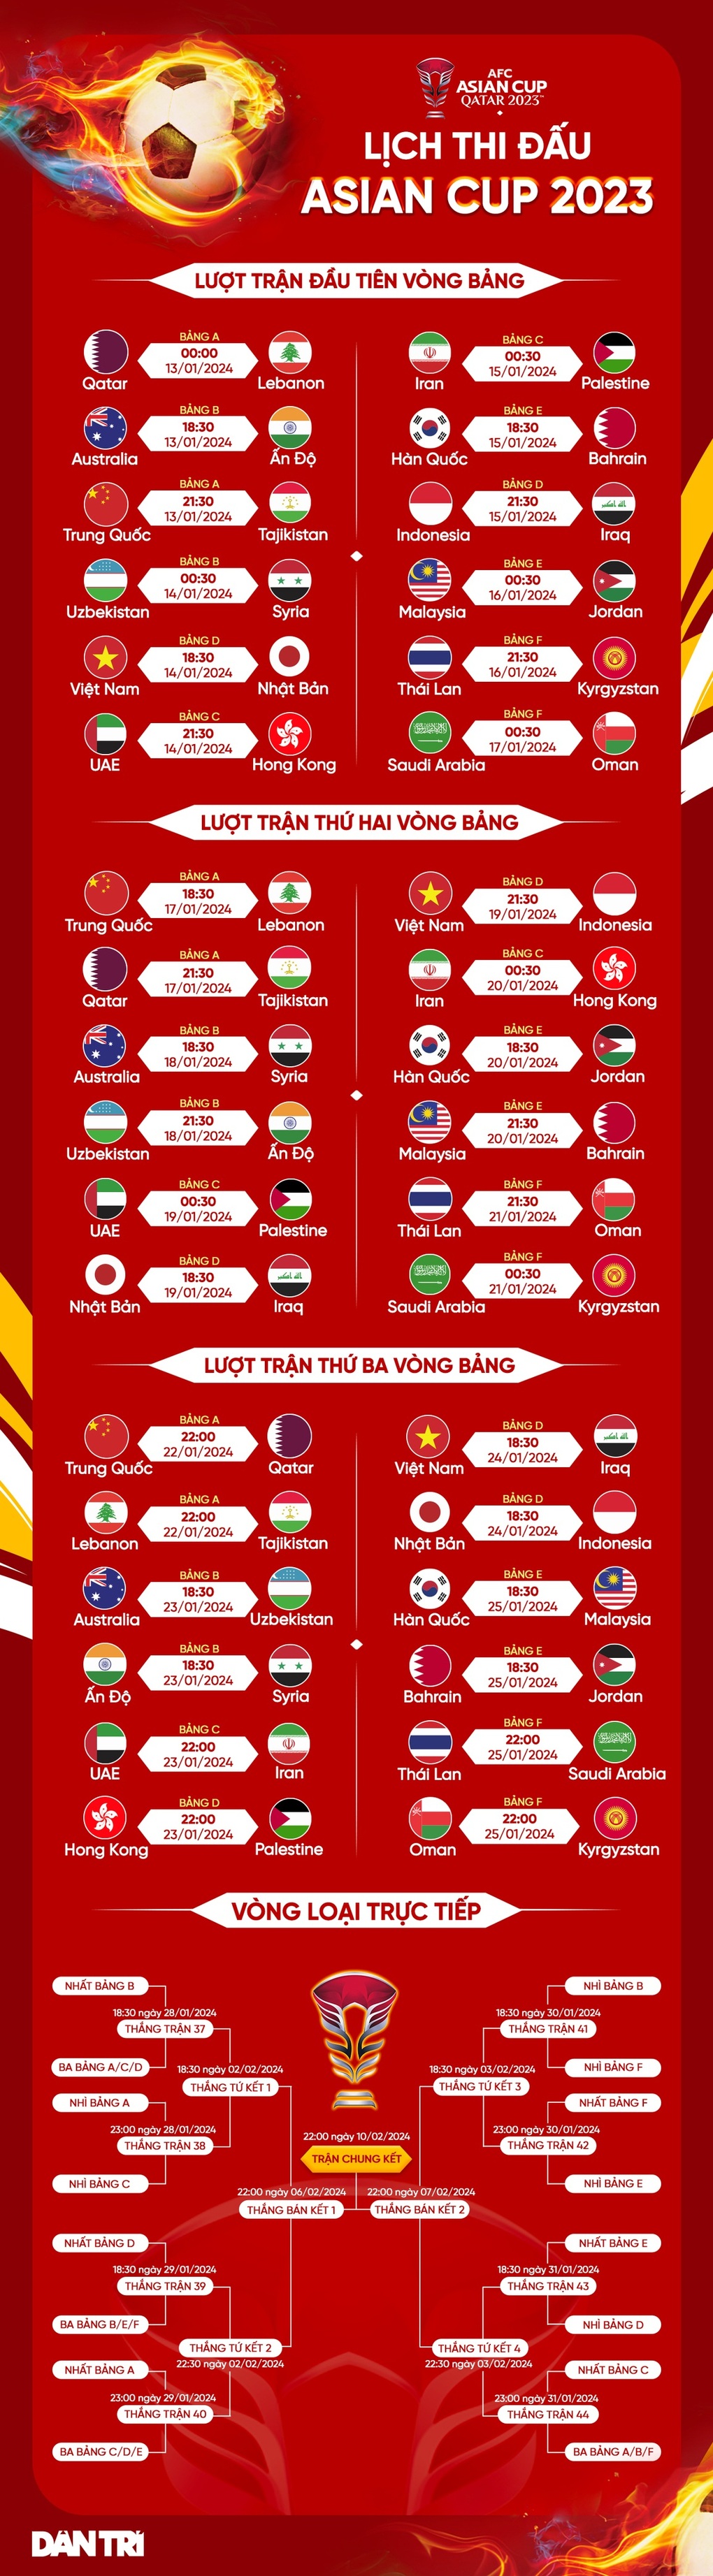 Báo Indonesia nói thẳng lý do đội nhà thua xa đội tuyển Việt Nam - 4